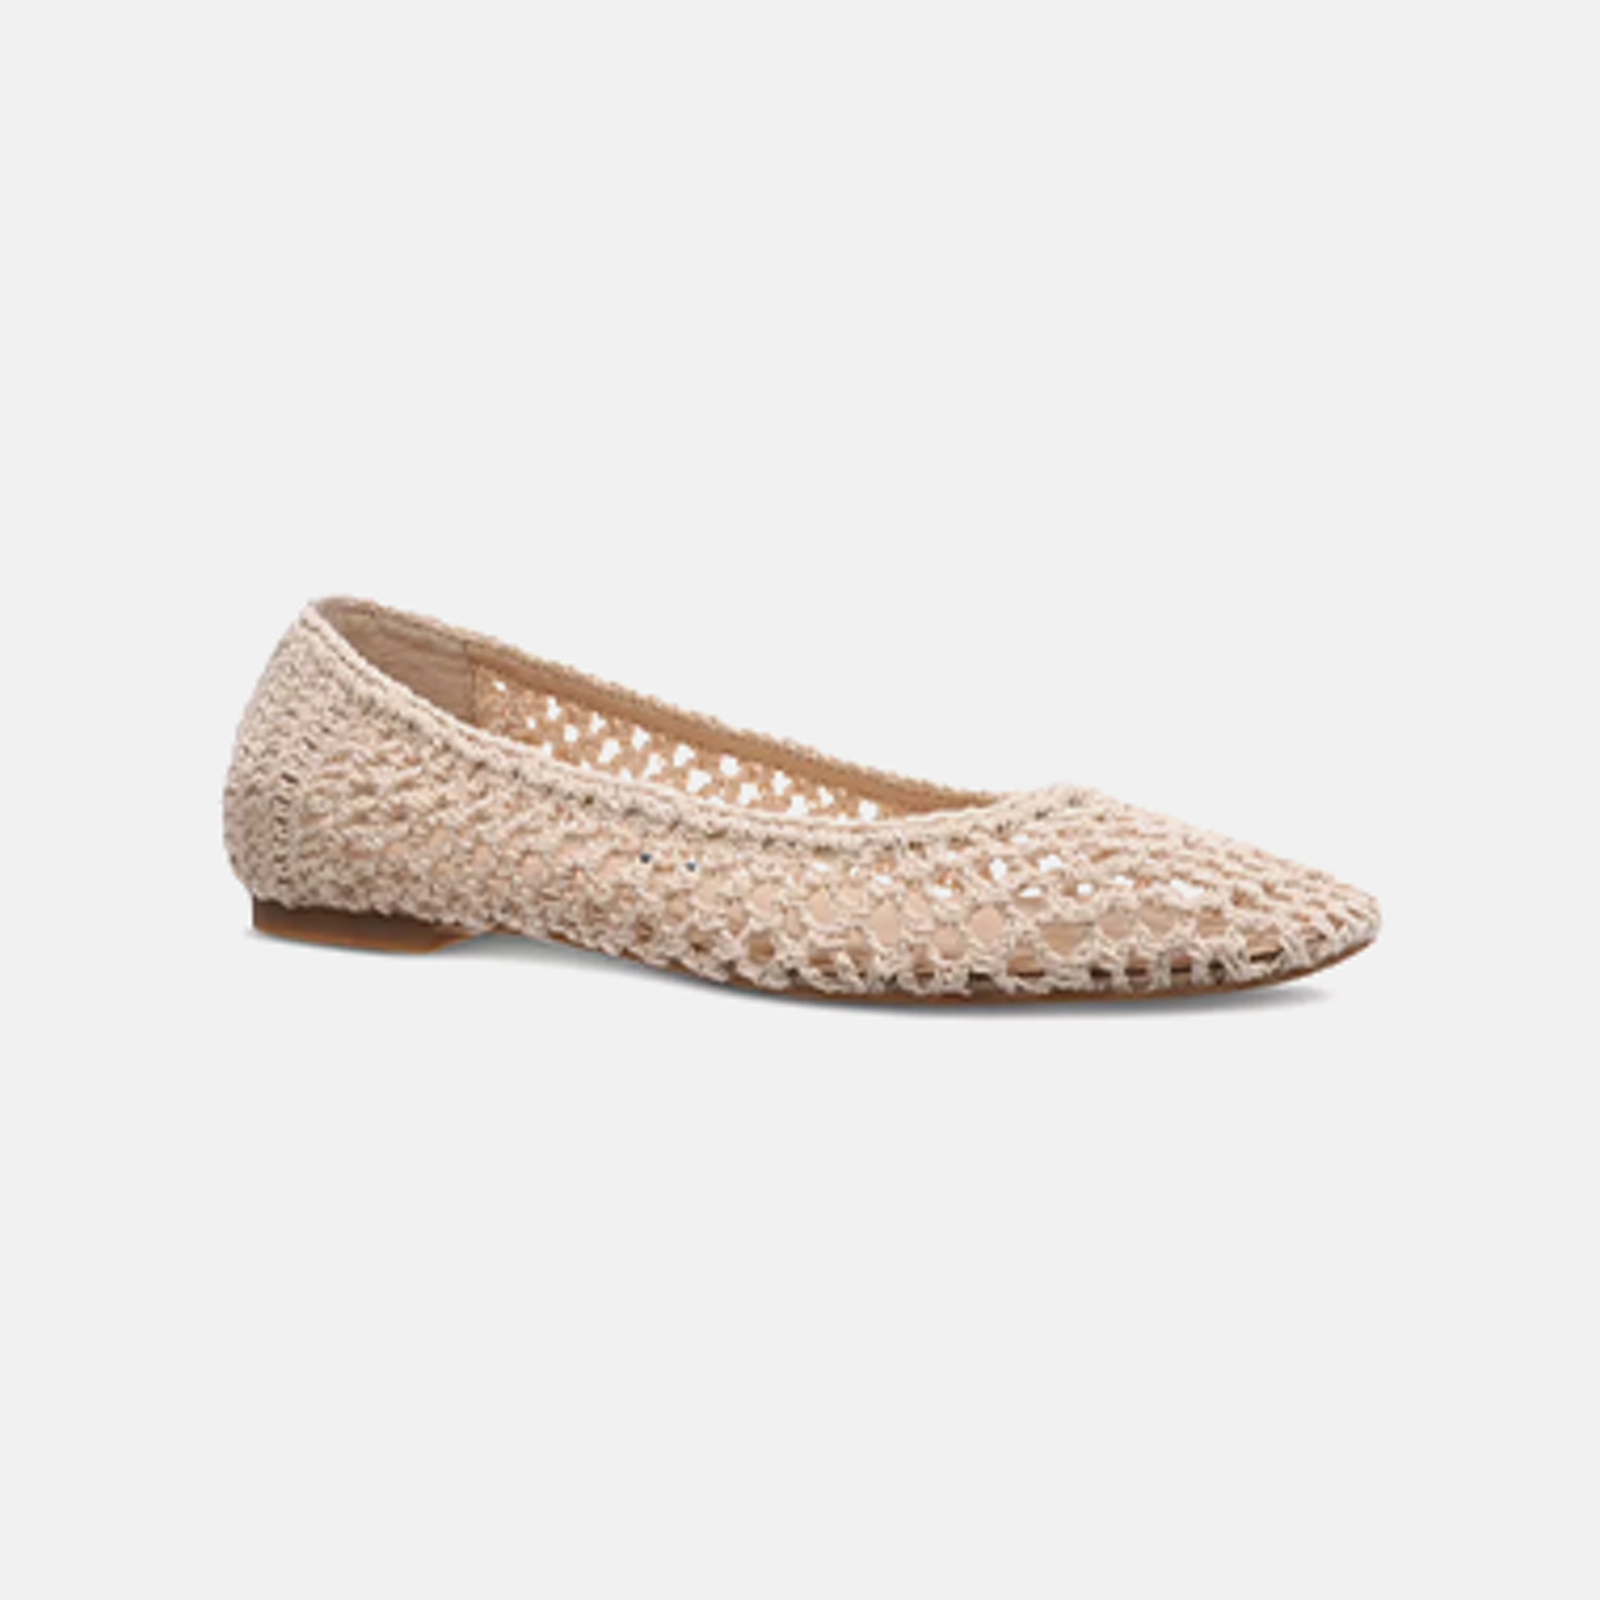 Tan & Beige Shoes for Women - Macy's